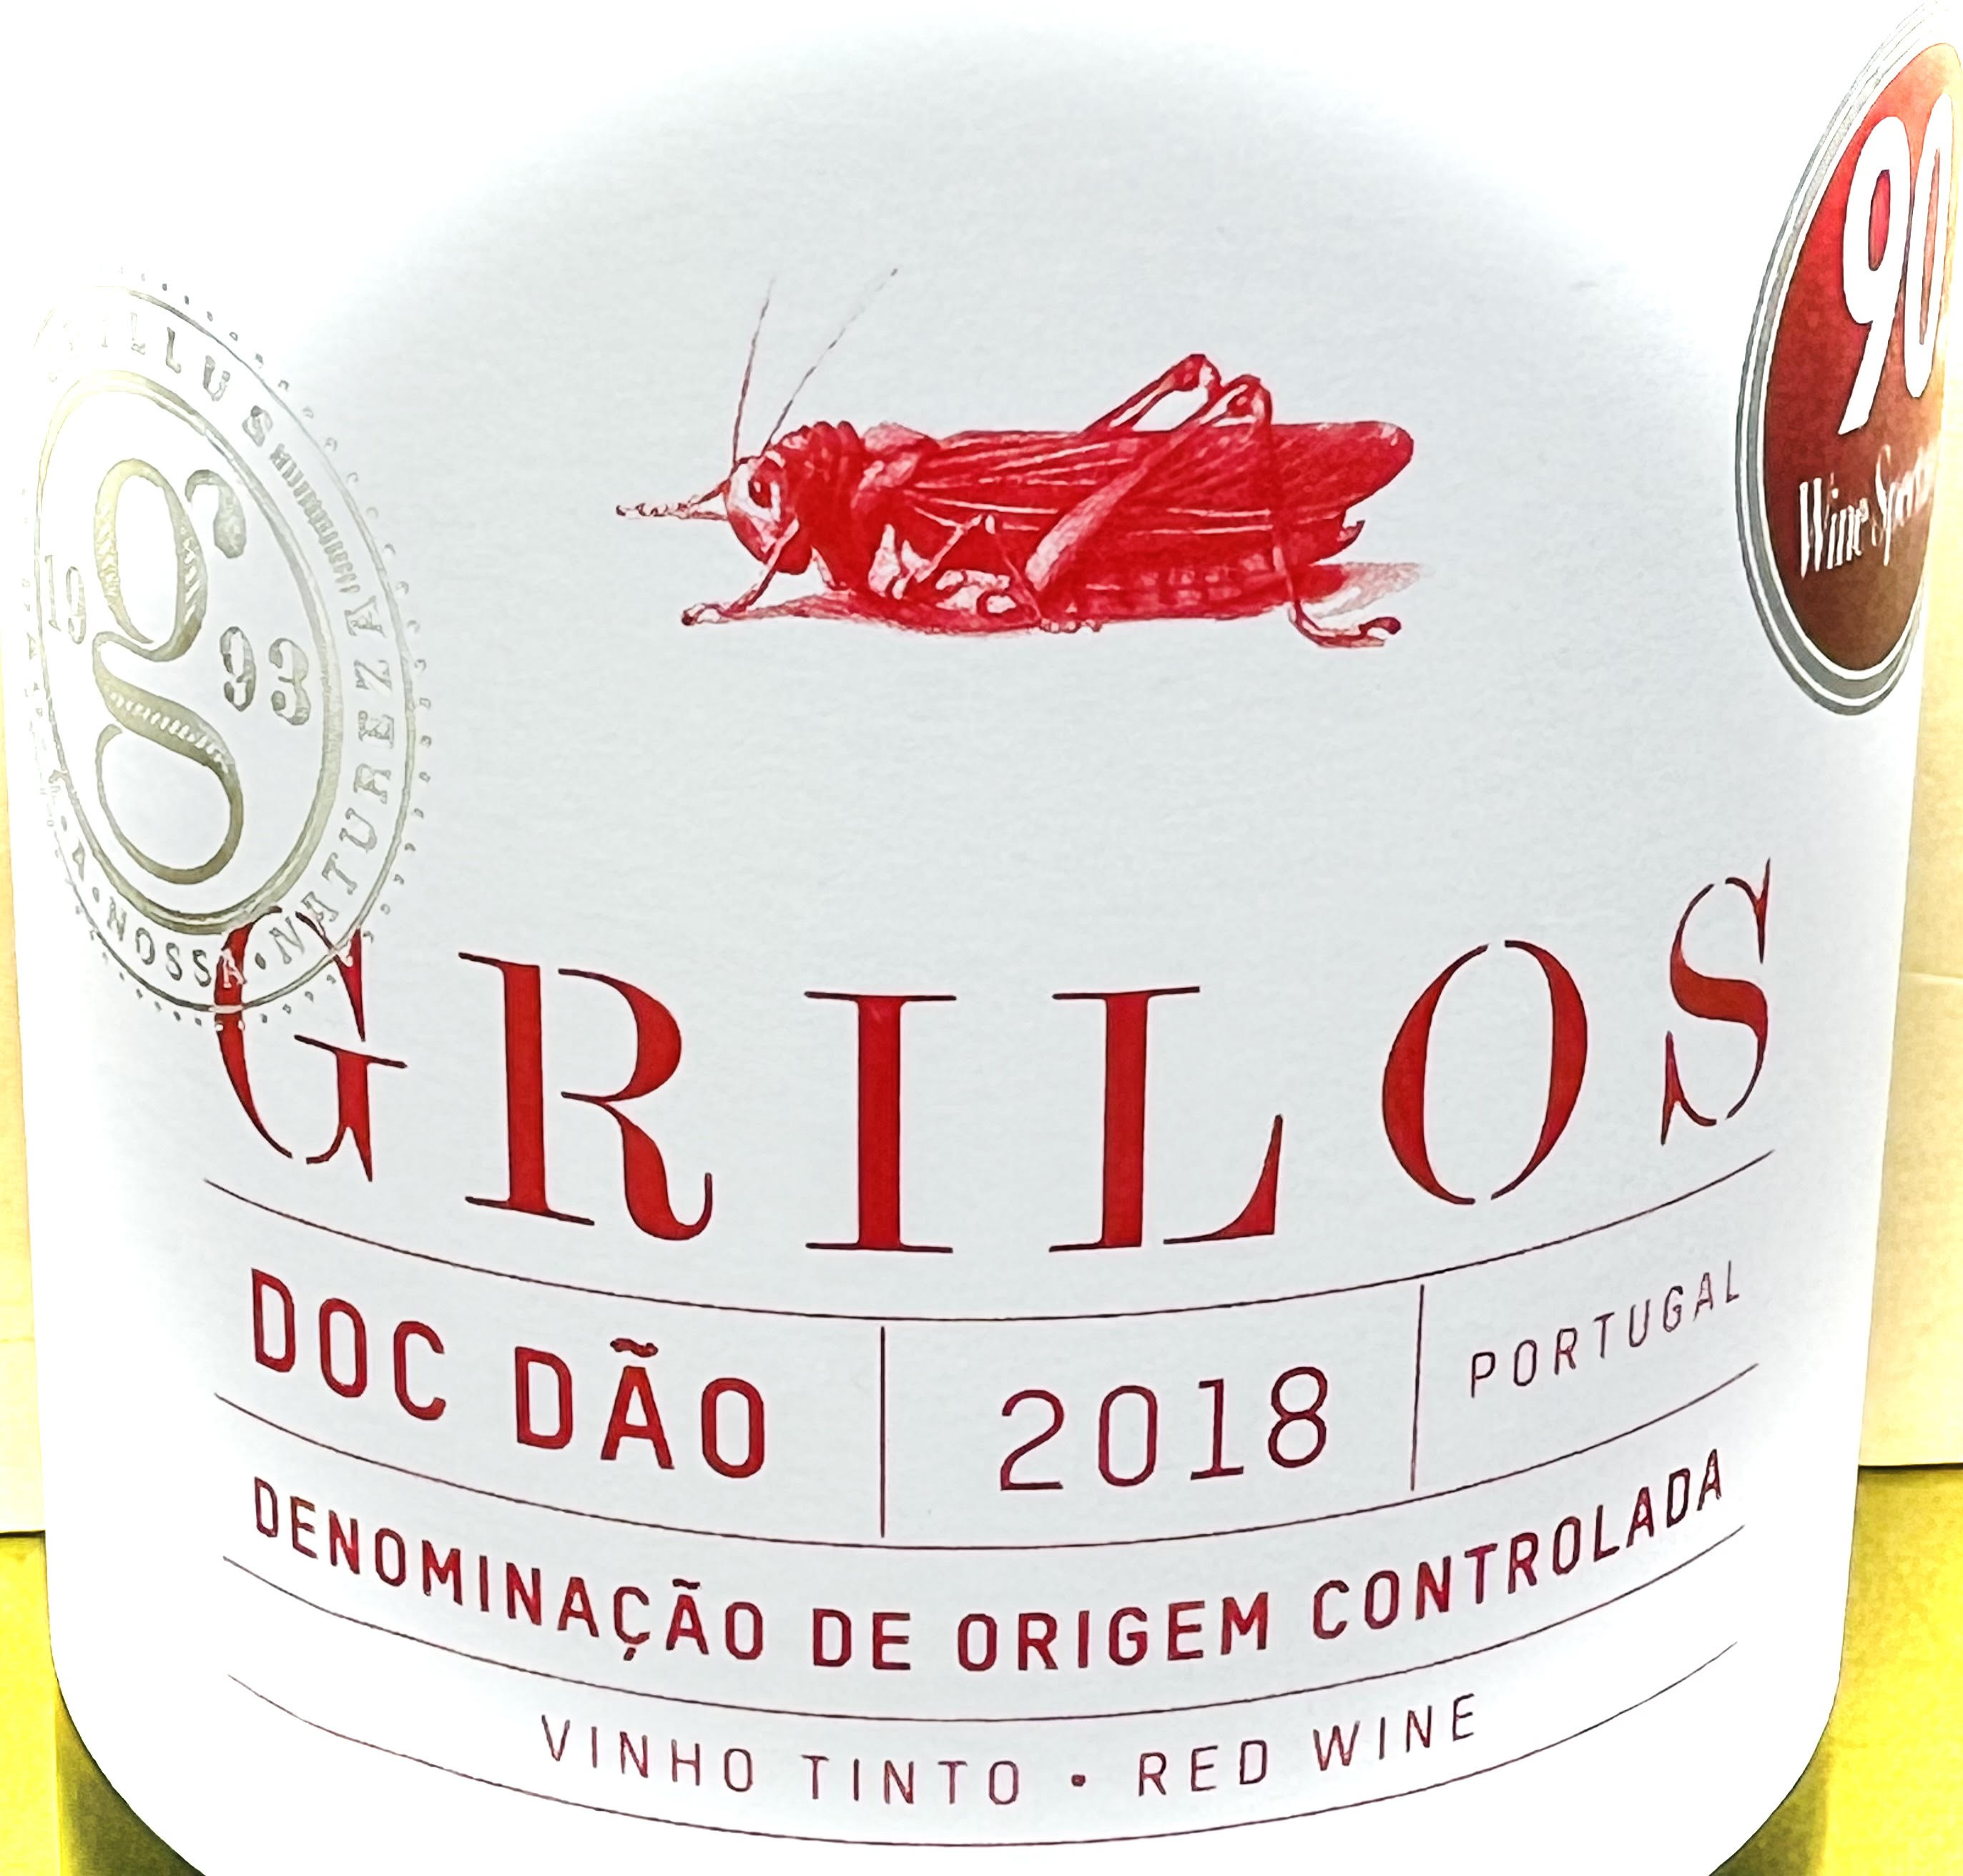 Grilos Dao Vinho Tinto red 2018